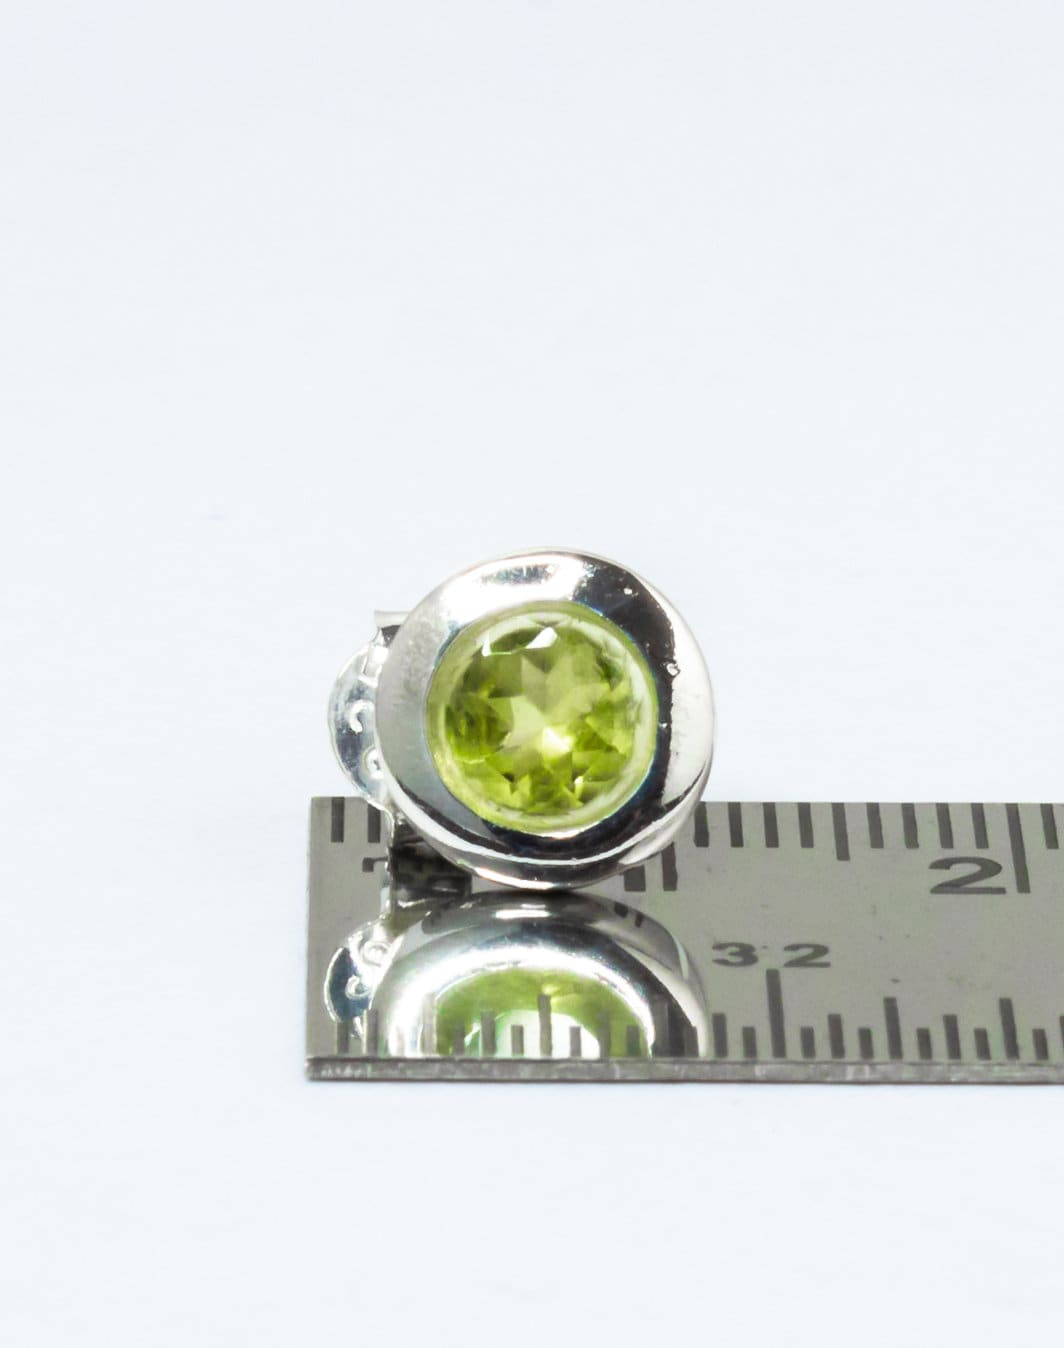 Genuine PERIDOT Gemstones Solid 925 SILVER Simple Round Shaped Stud Earrings, Olive Green Peridot Stud Earrings, Australia, Zorbajewellers